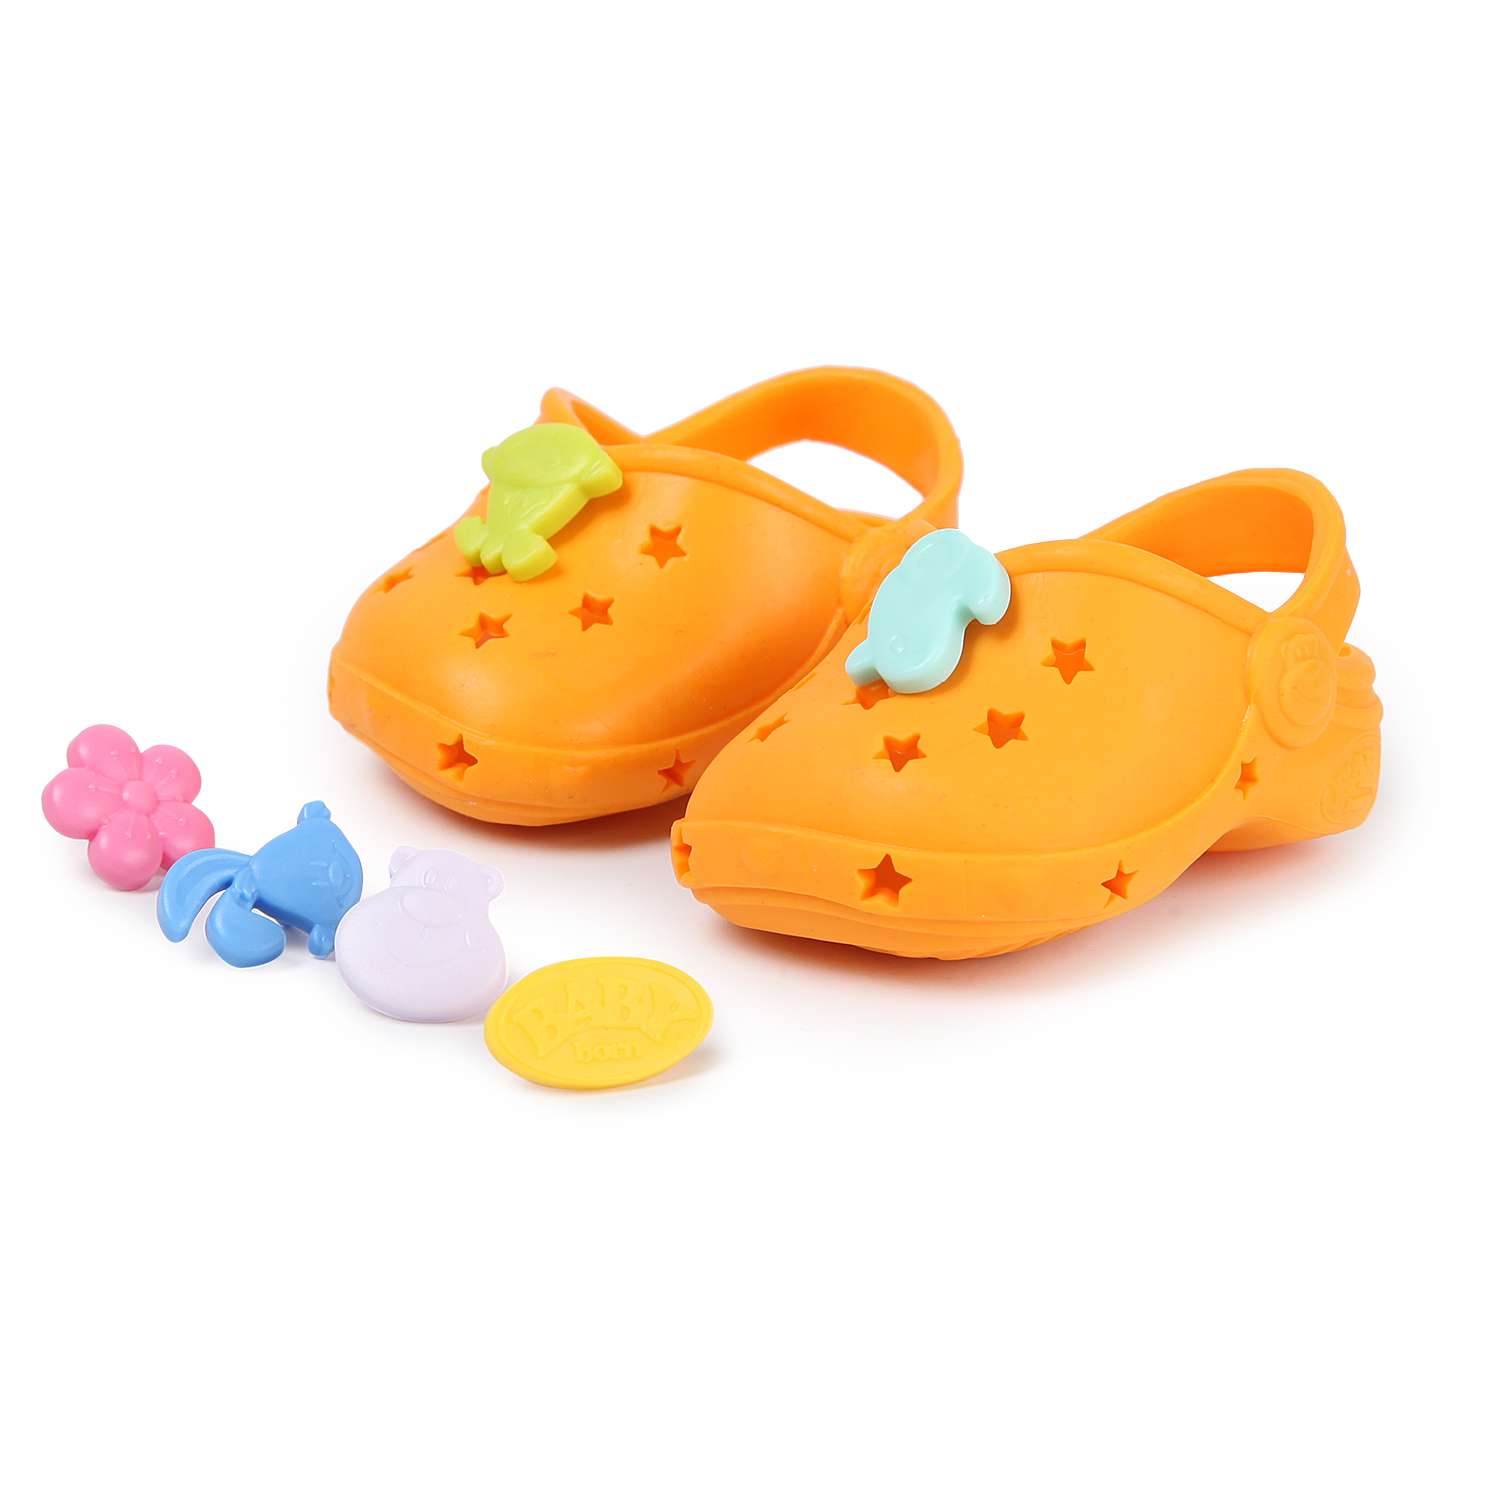 Обувь для куклы Zapf Creation Baby born Сандали фантазийные Оранжевые 824-597 824-597 - фото 1